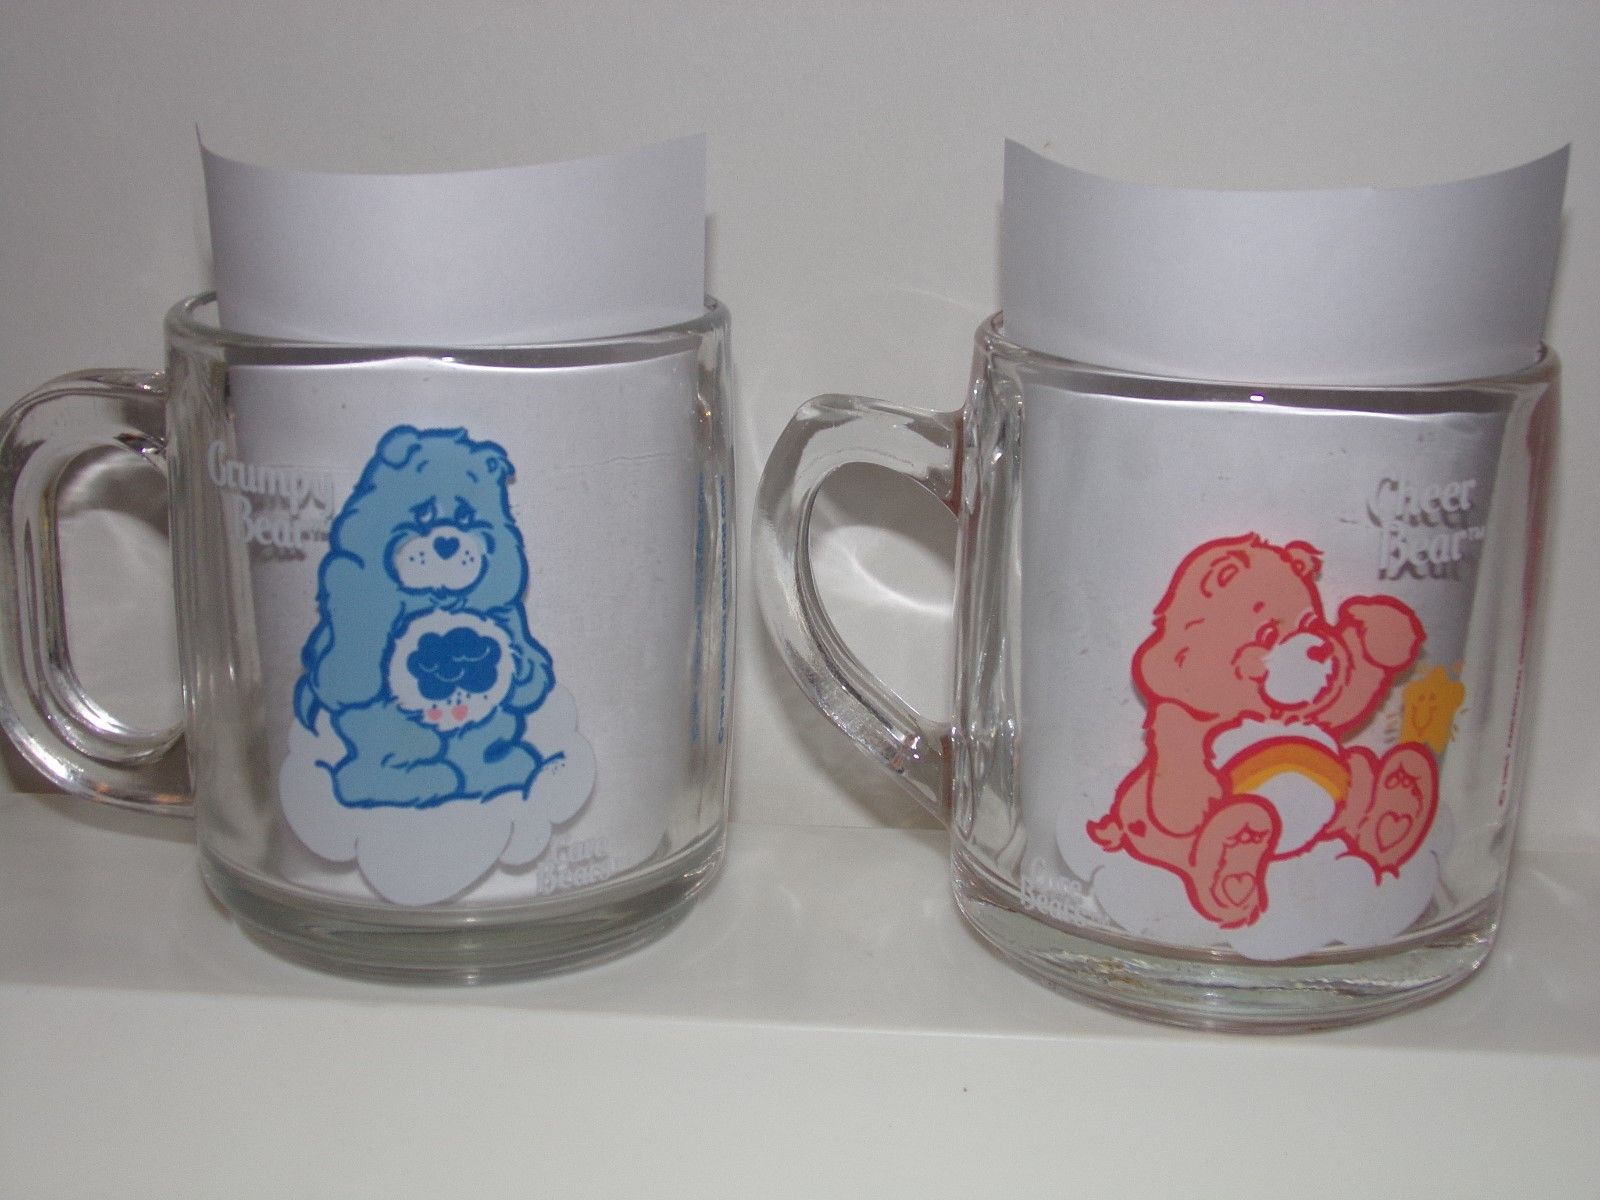 Grumpy Bear & Cheer Bear - Care Bear Glass Mug - 1984 American Greetings